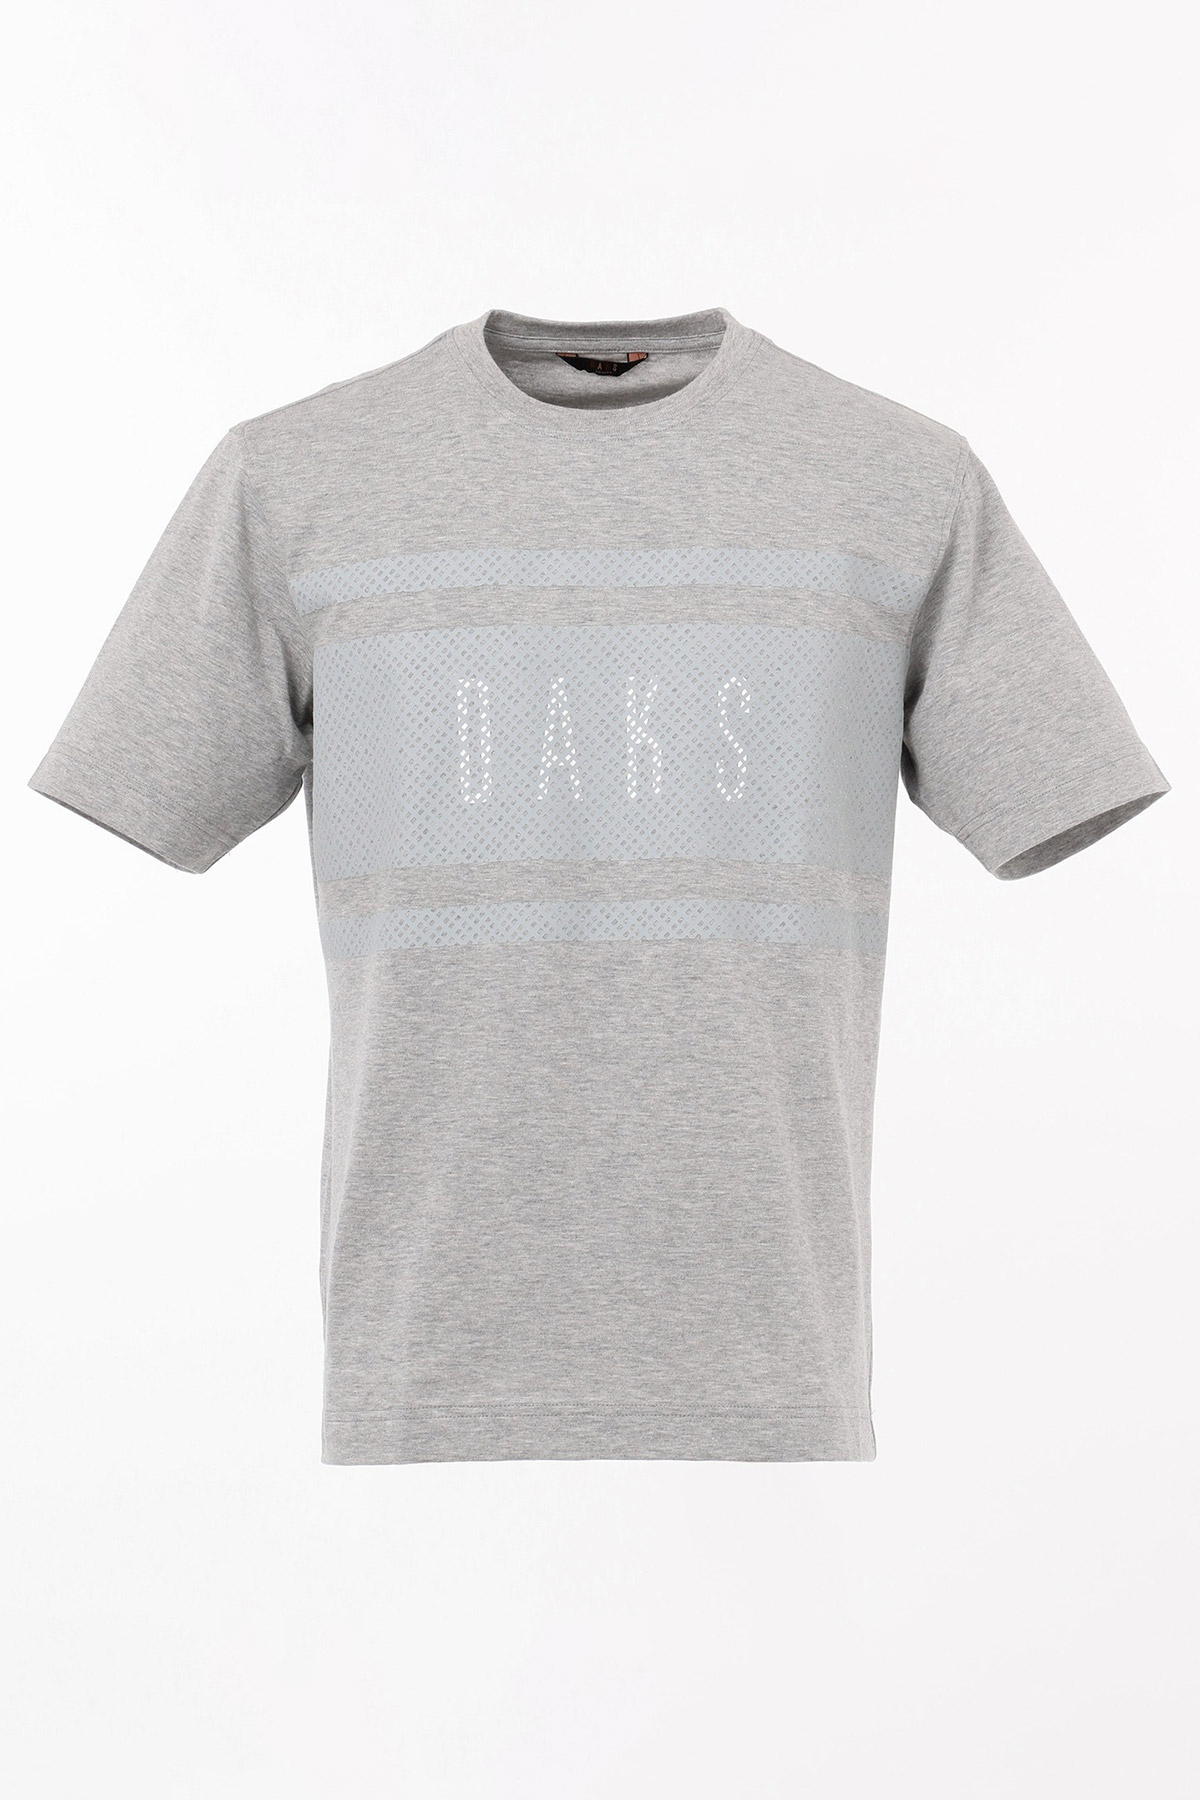 DAKSプリント 半袖Tシャツ 詳細画像 ライトグレー_DAKS 1